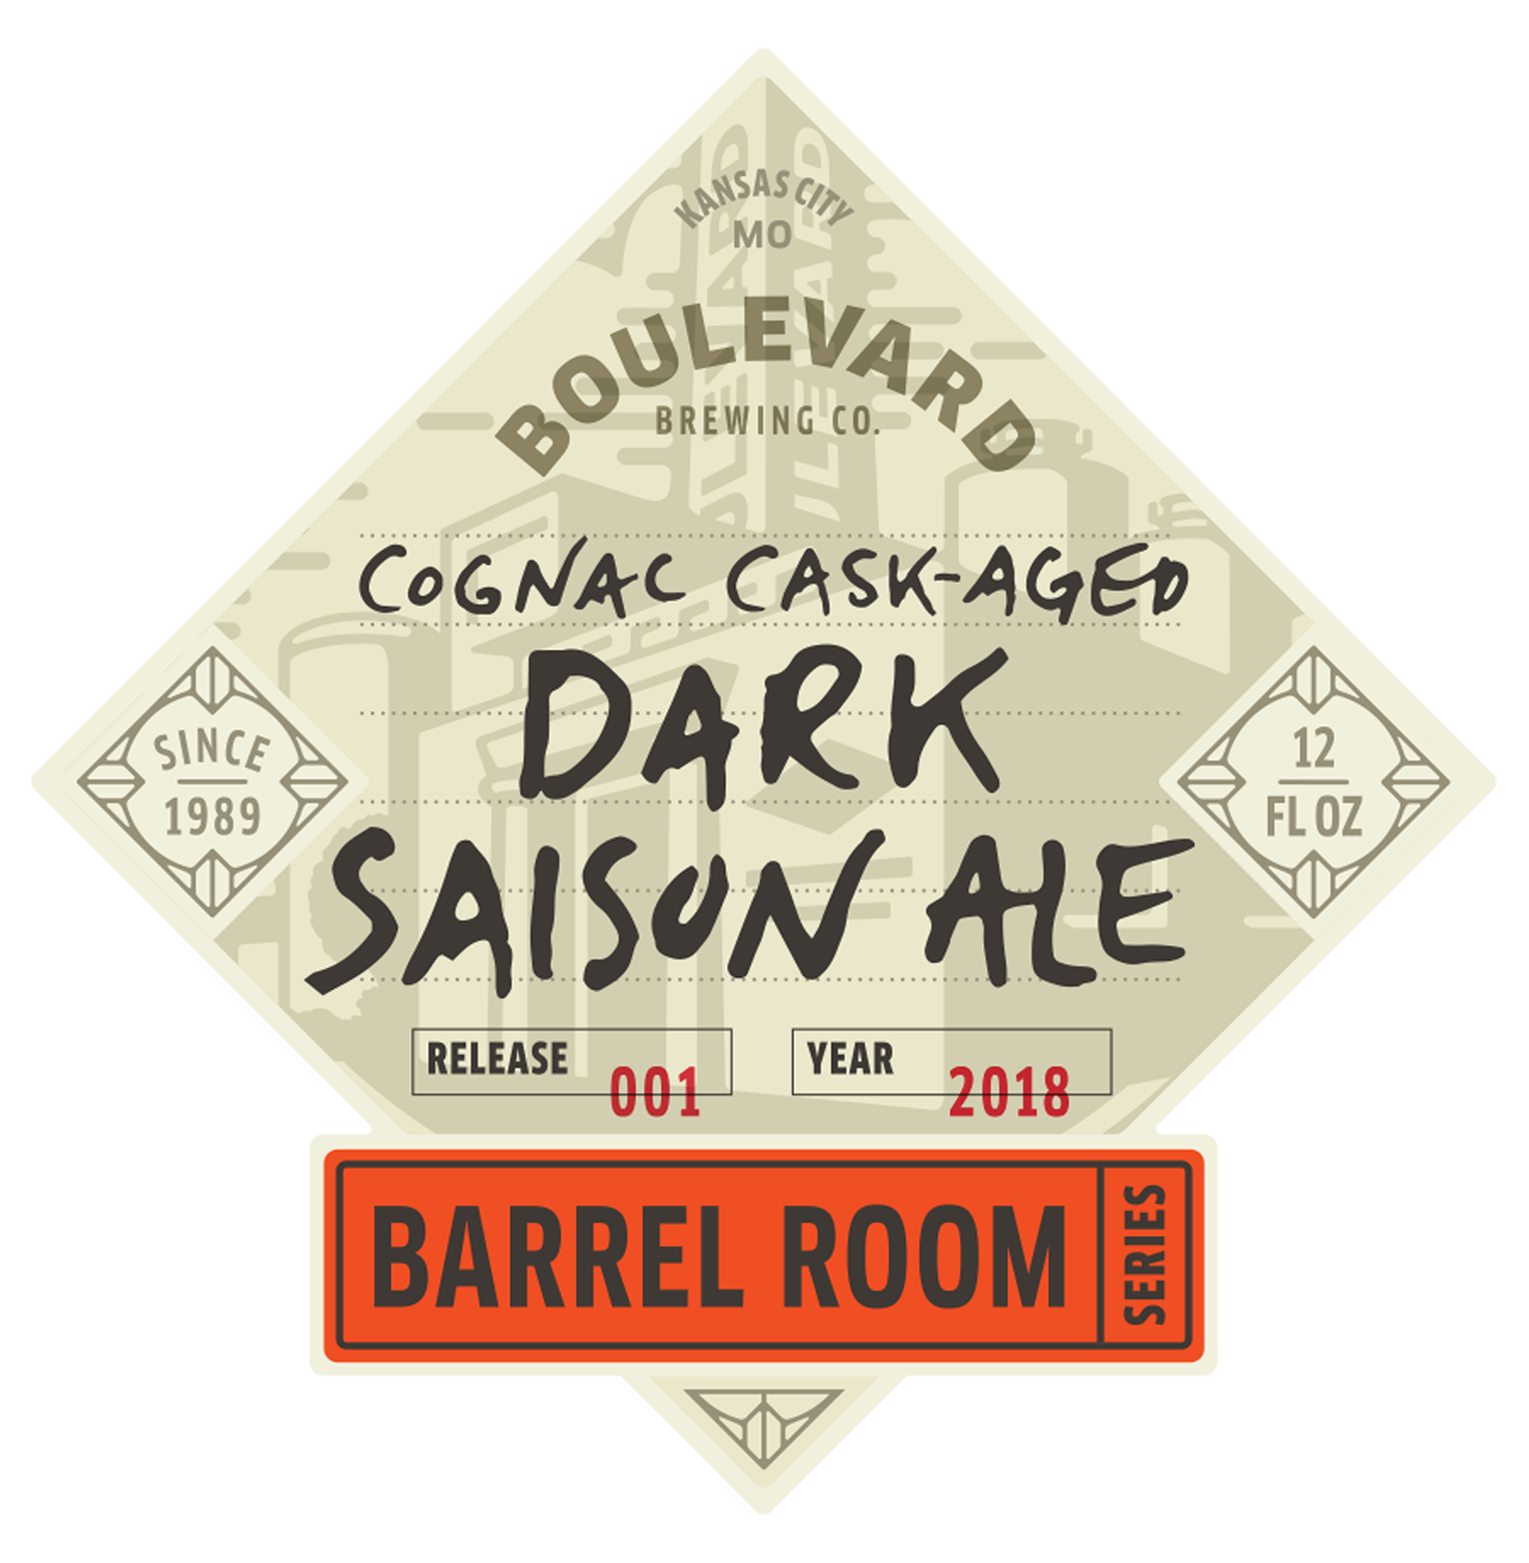 Cognac Cask-Aged Dark Saison Ale